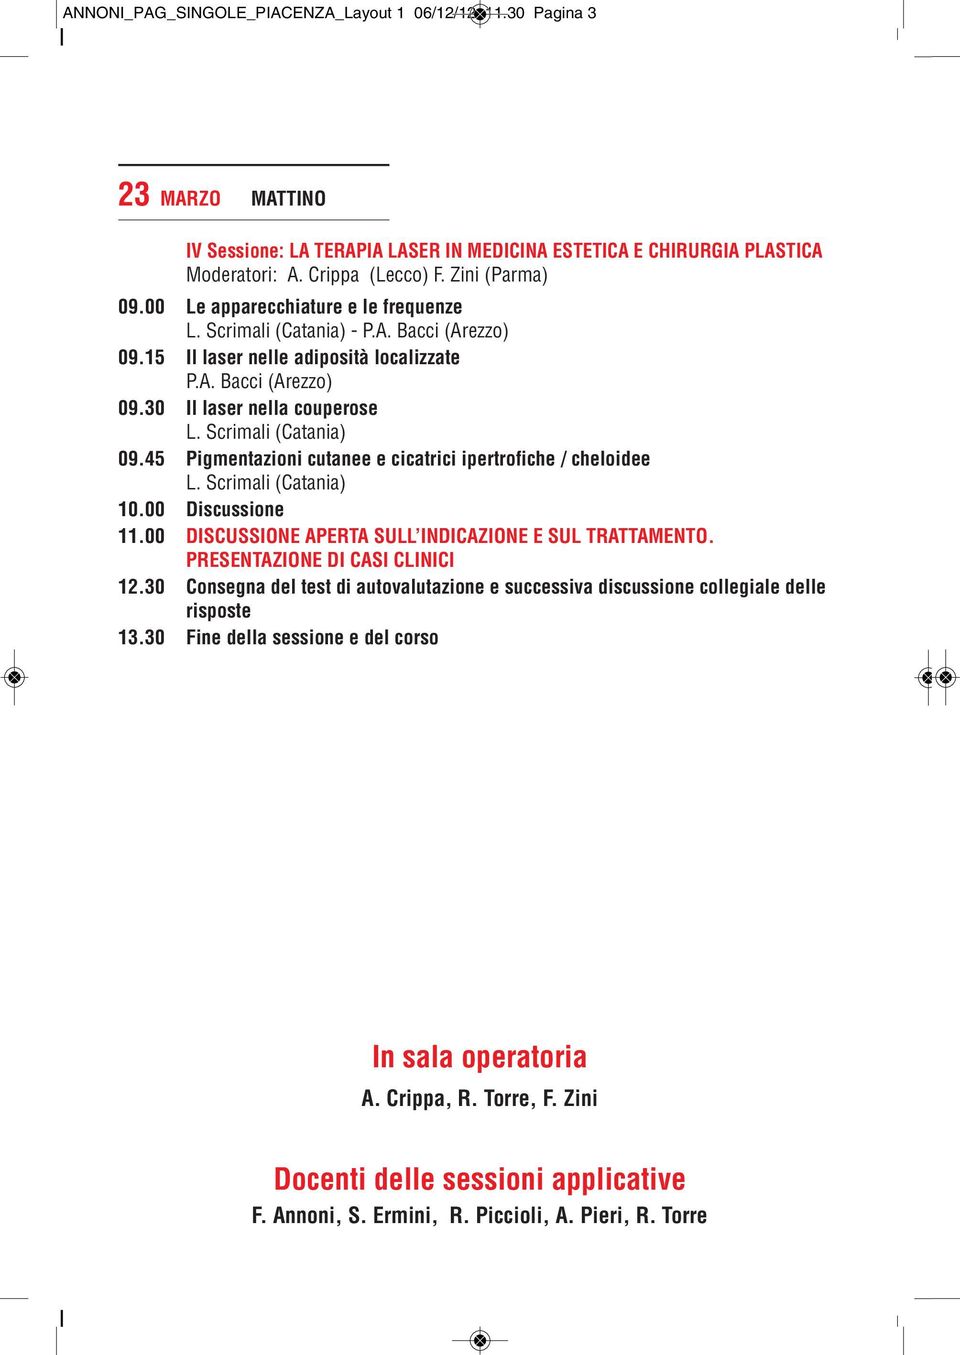 45 Pigmentazioni cutanee e cicatrici ipertrofiche / cheloidee L. Scrimali (Catania) 10.00 Discussione 11.00 DISCUSSIONE APERTA SULL INDICAZIONE E SUL TRATTAMENTO. PRESENTAZIONE DI CASI CLINICI 12.